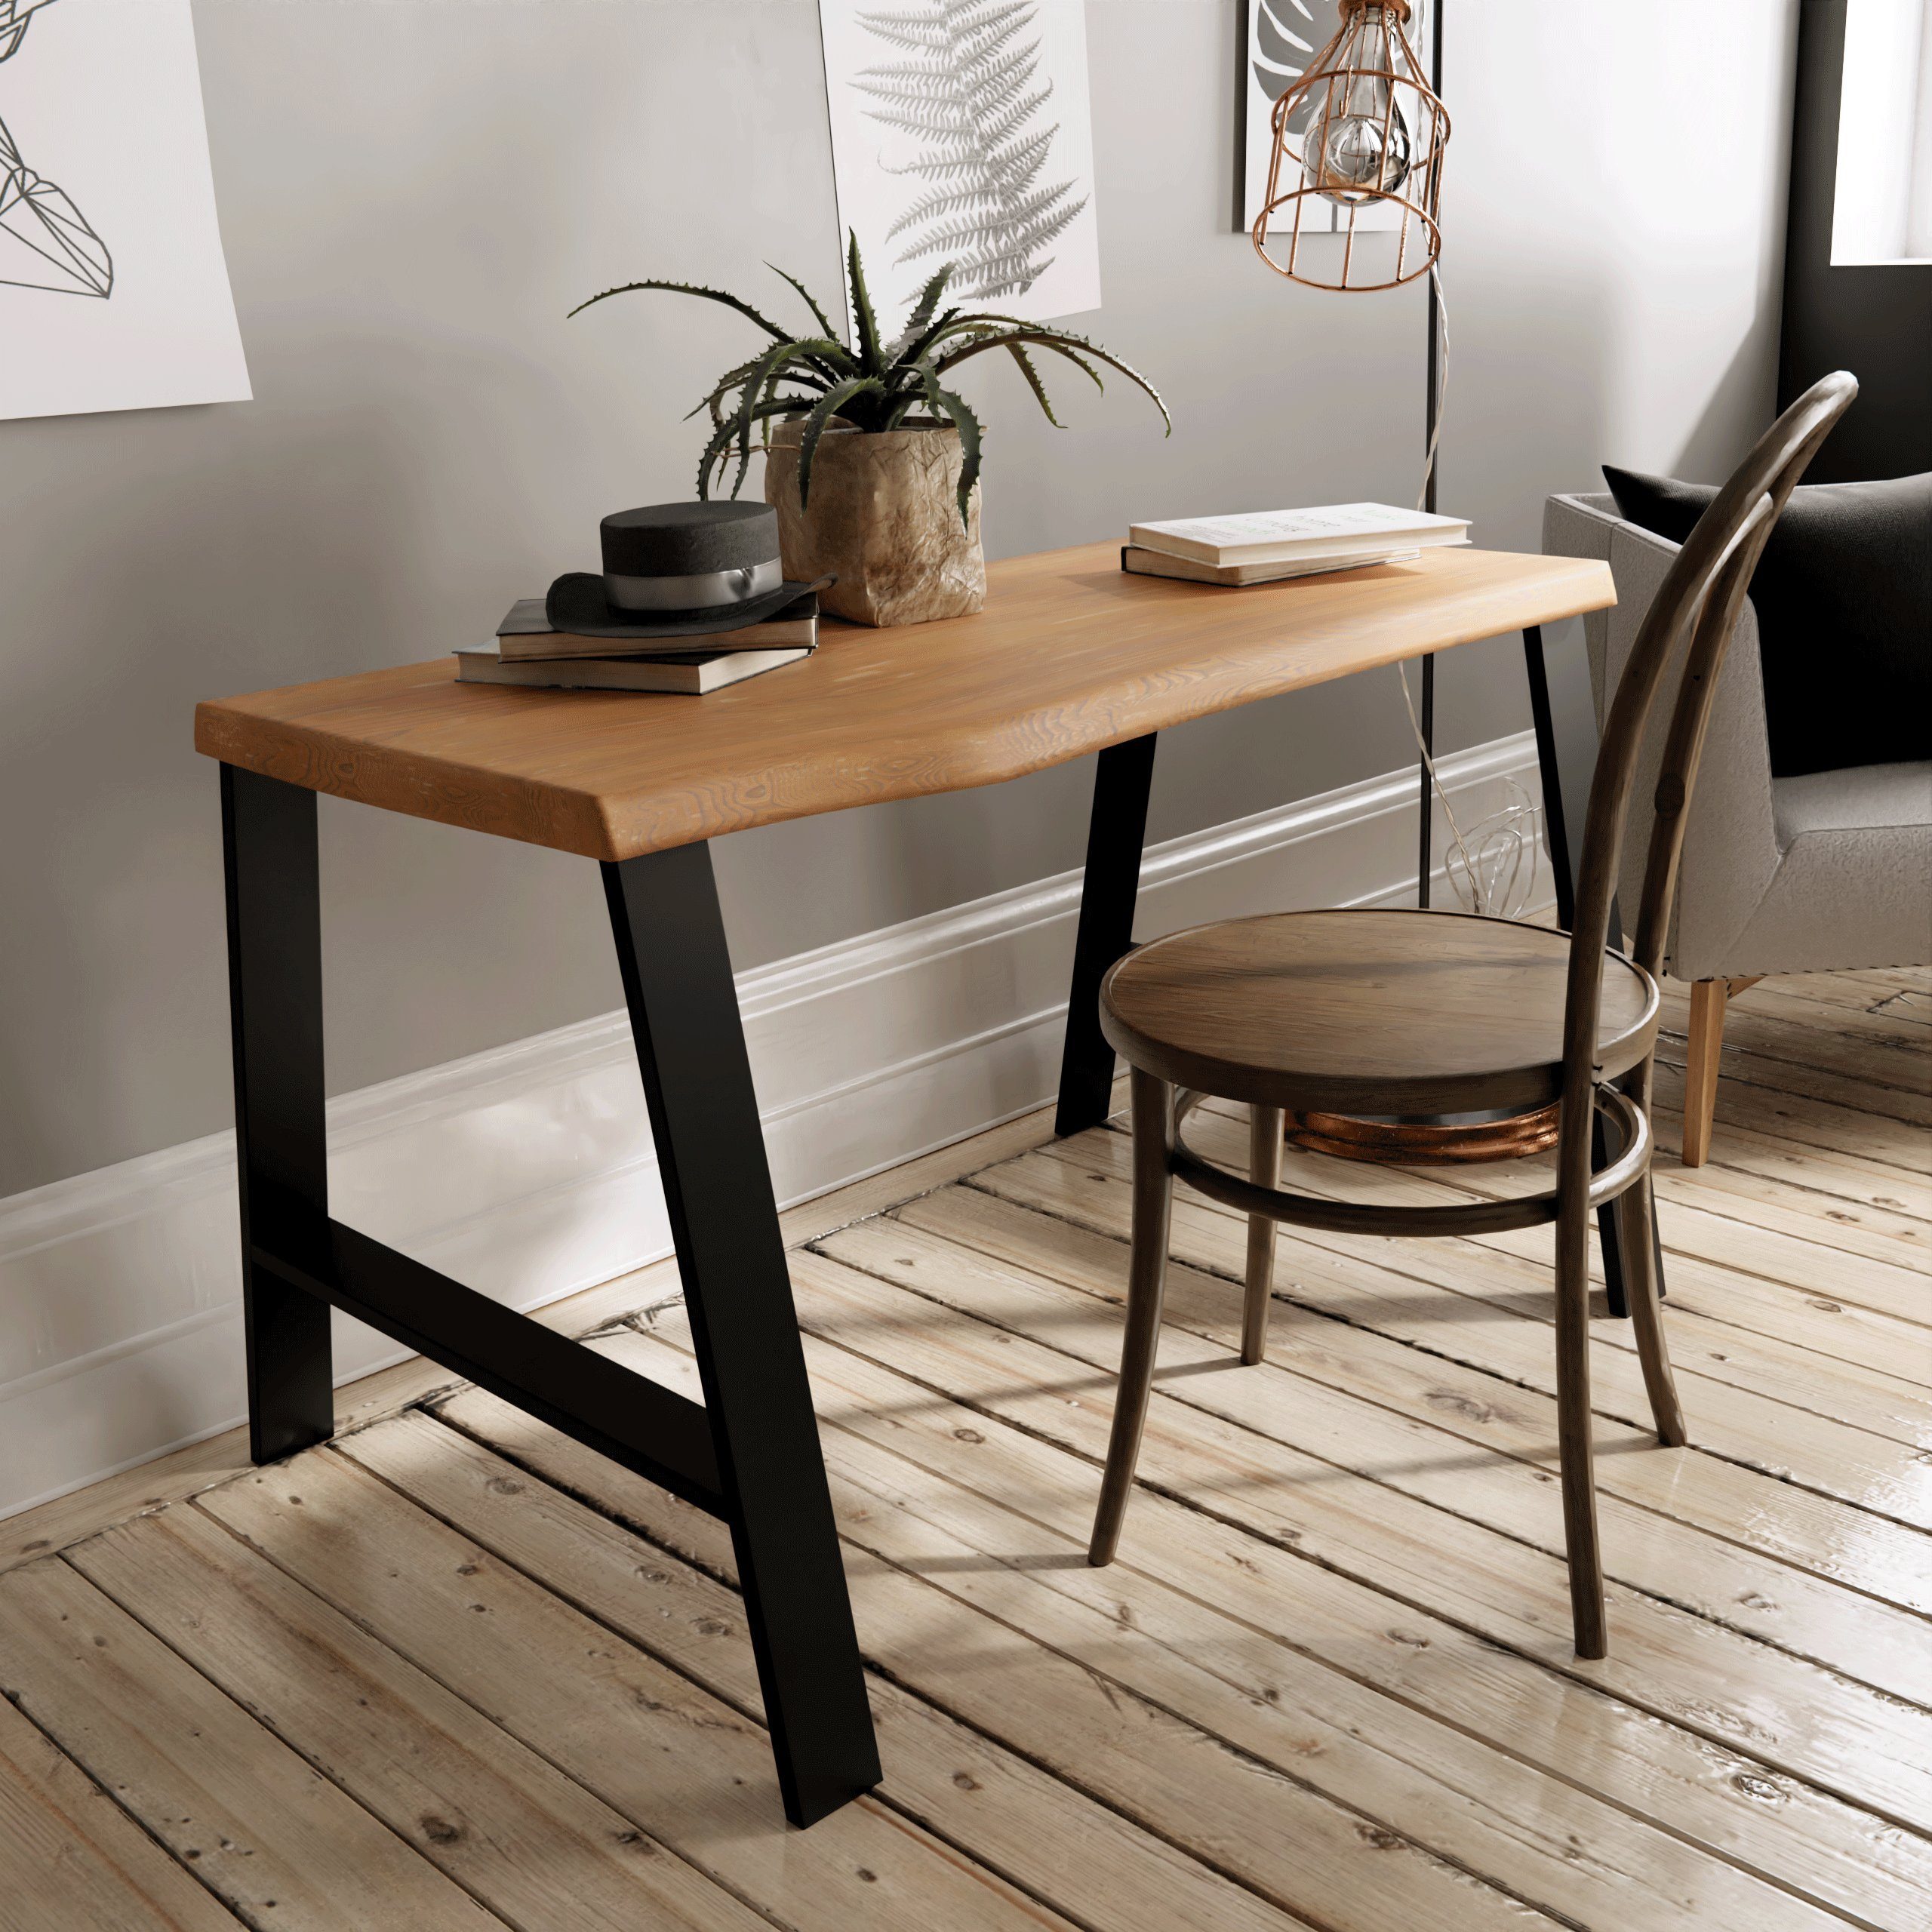 2 - Projekt Tischbein Masters schwarz Dein für cm Tischbeine DIY 30/45x42 - Sitzbank Decor - NOGGI I A-Form, Möbelkufen Home